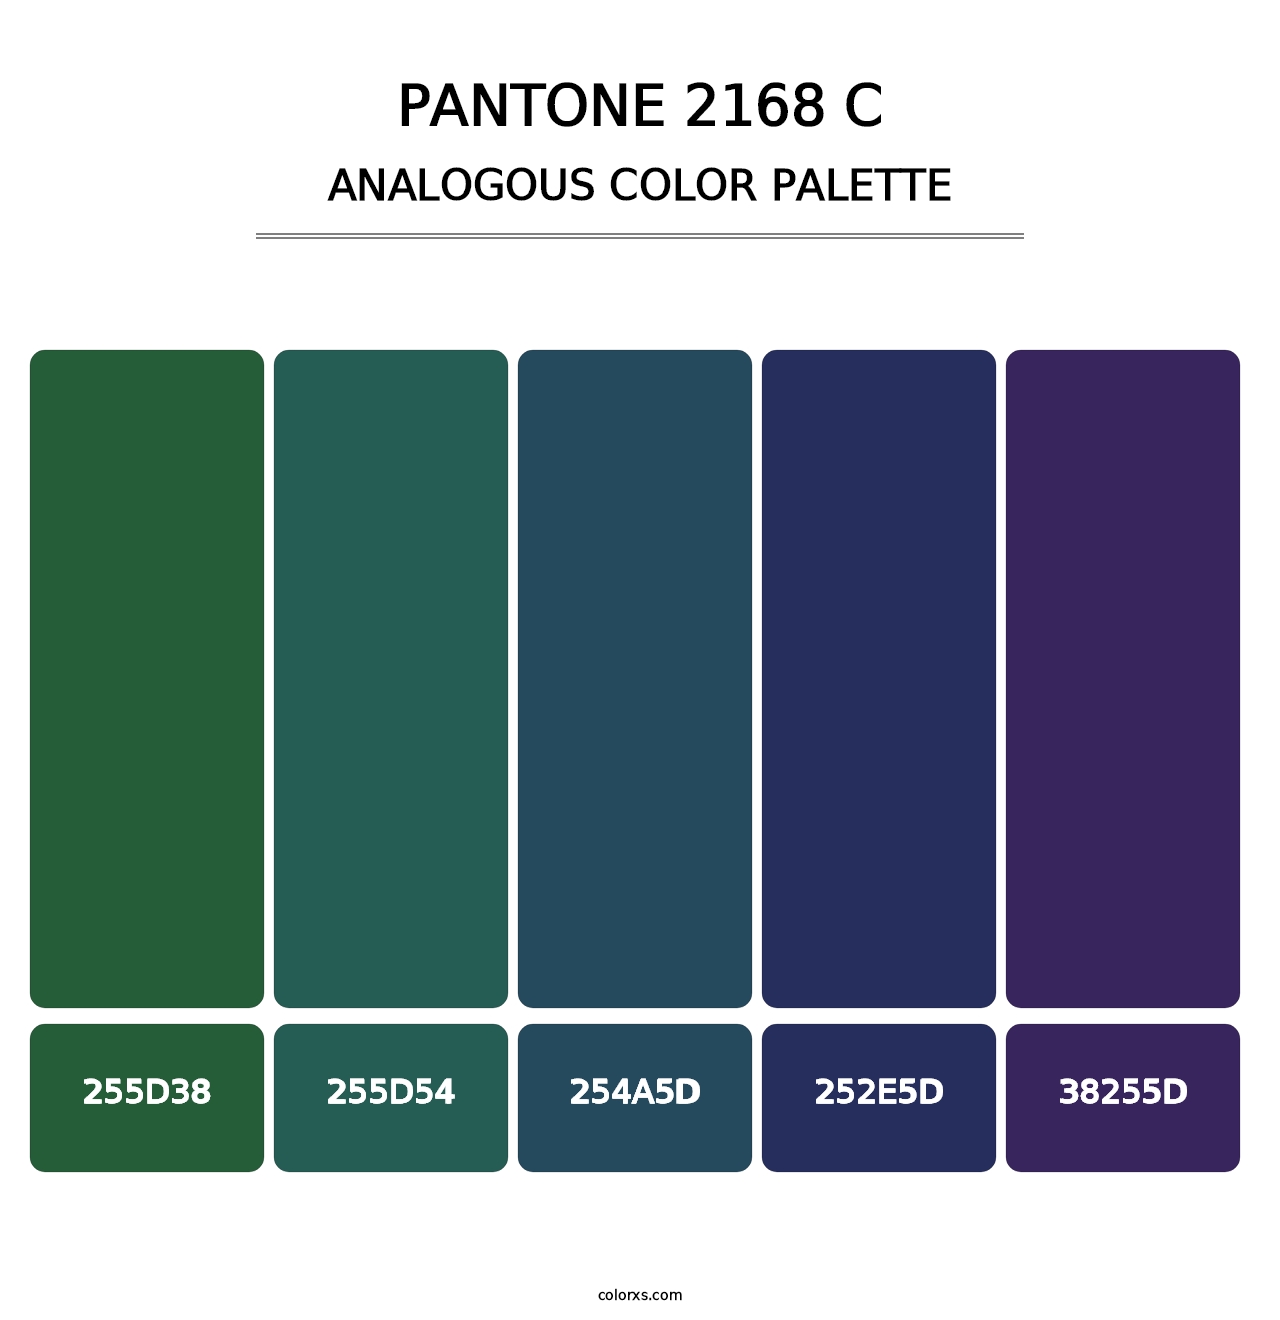 PANTONE 2168 C - Analogous Color Palette